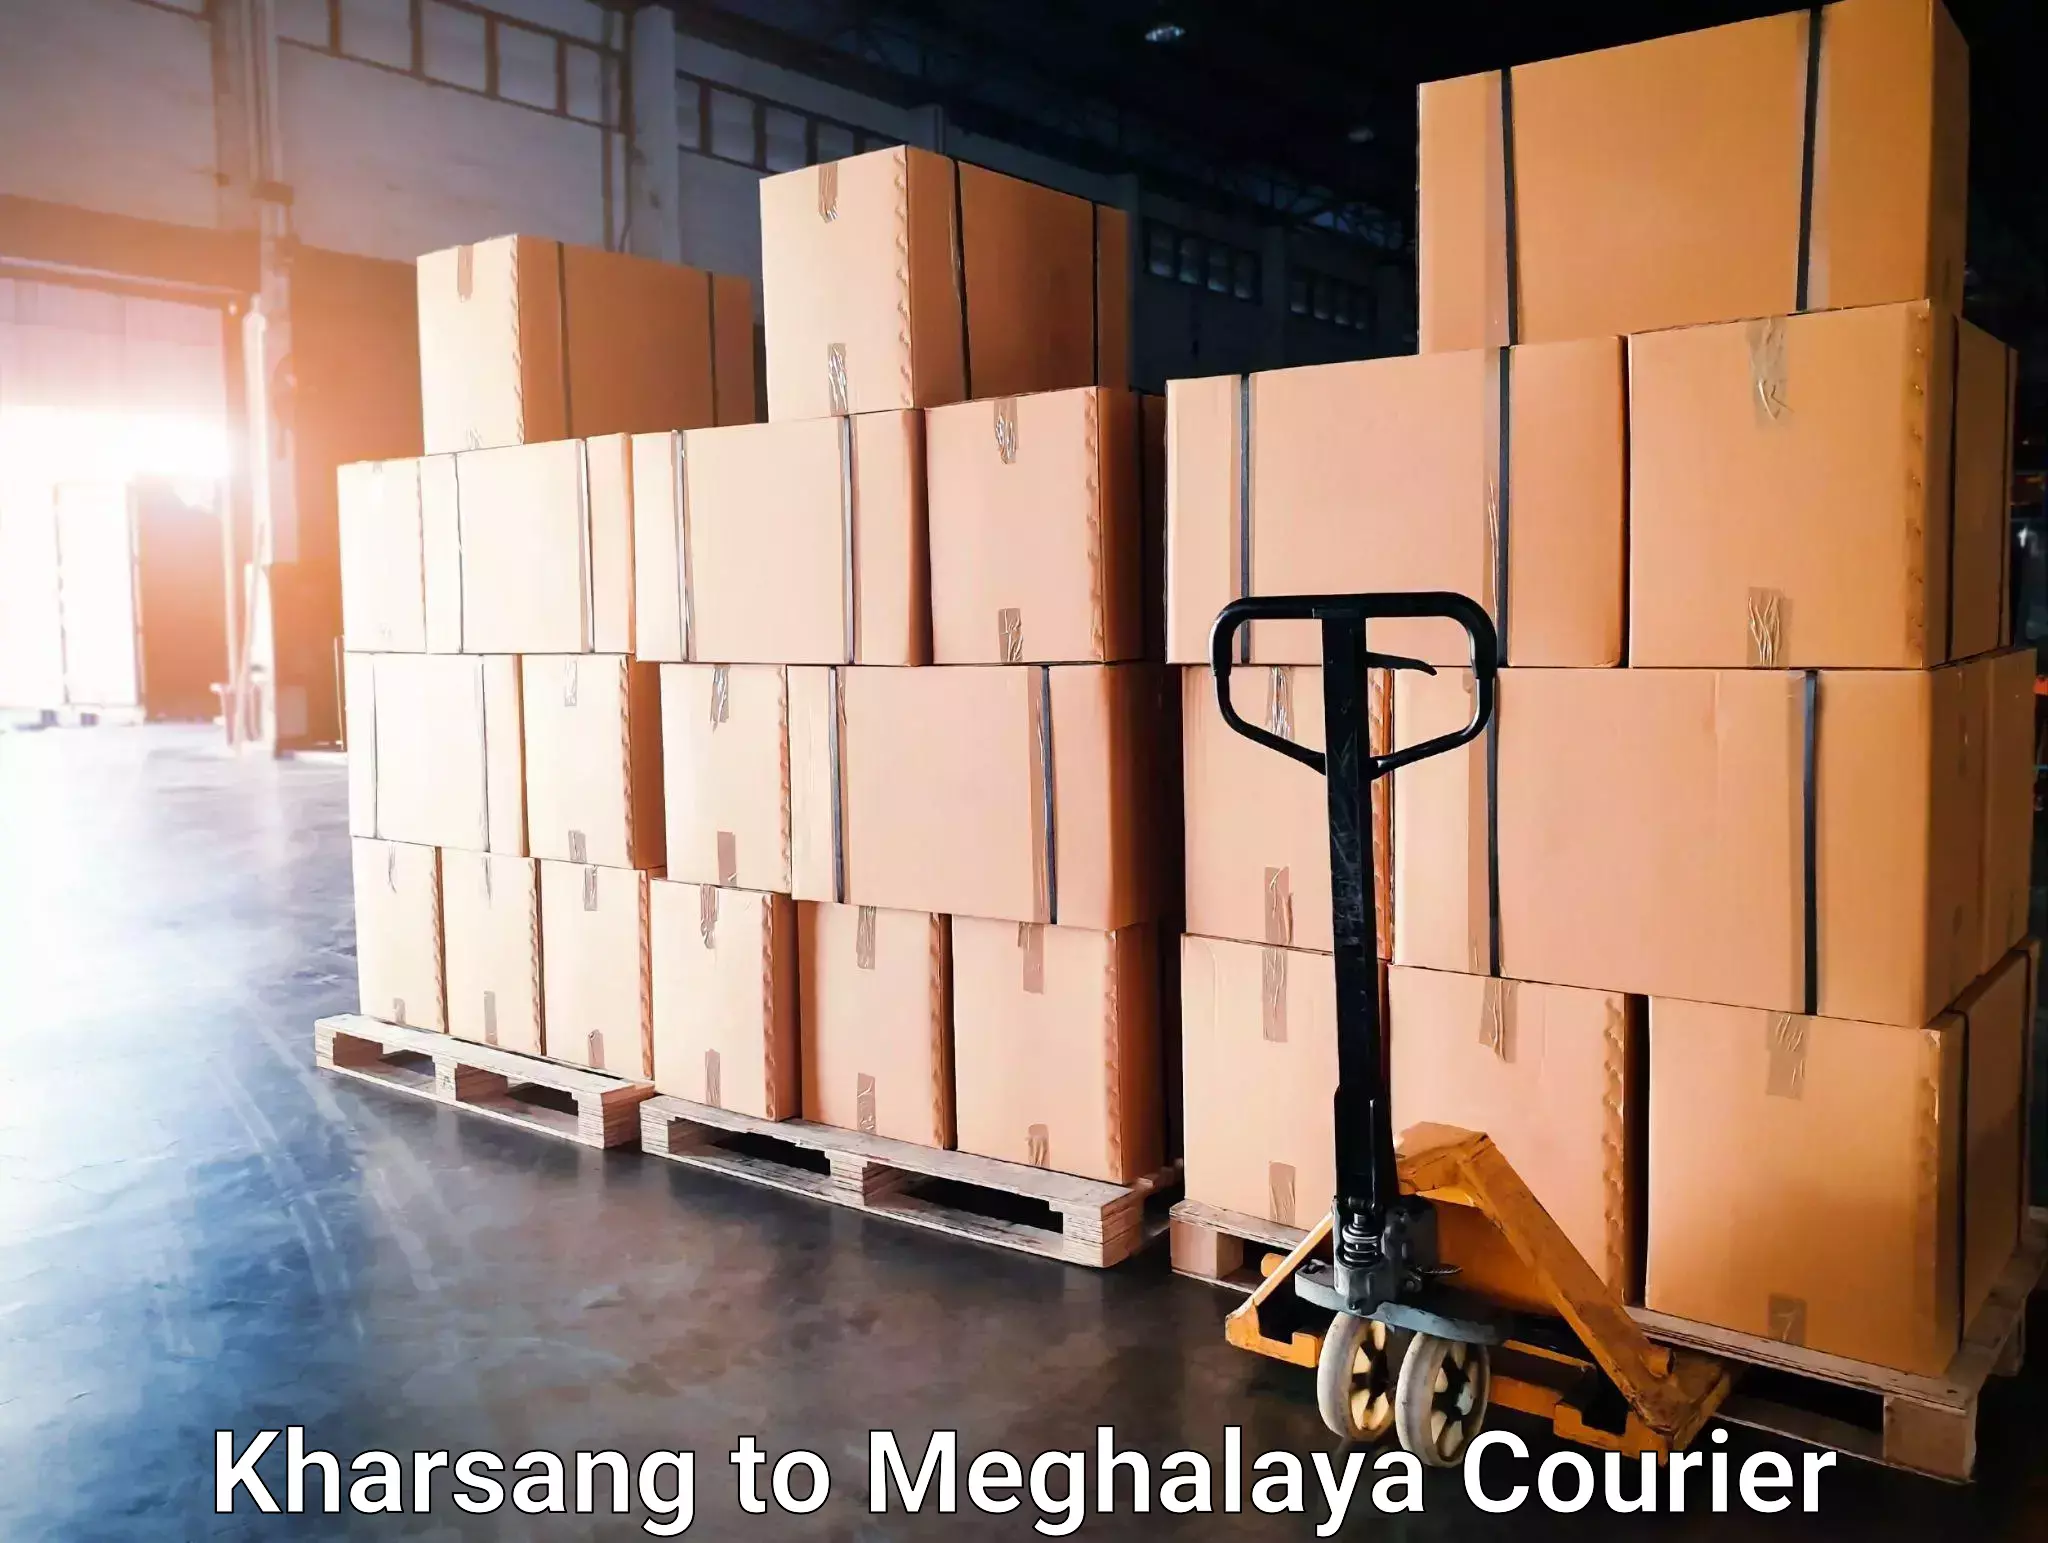 Global shipping solutions Kharsang to Meghalaya